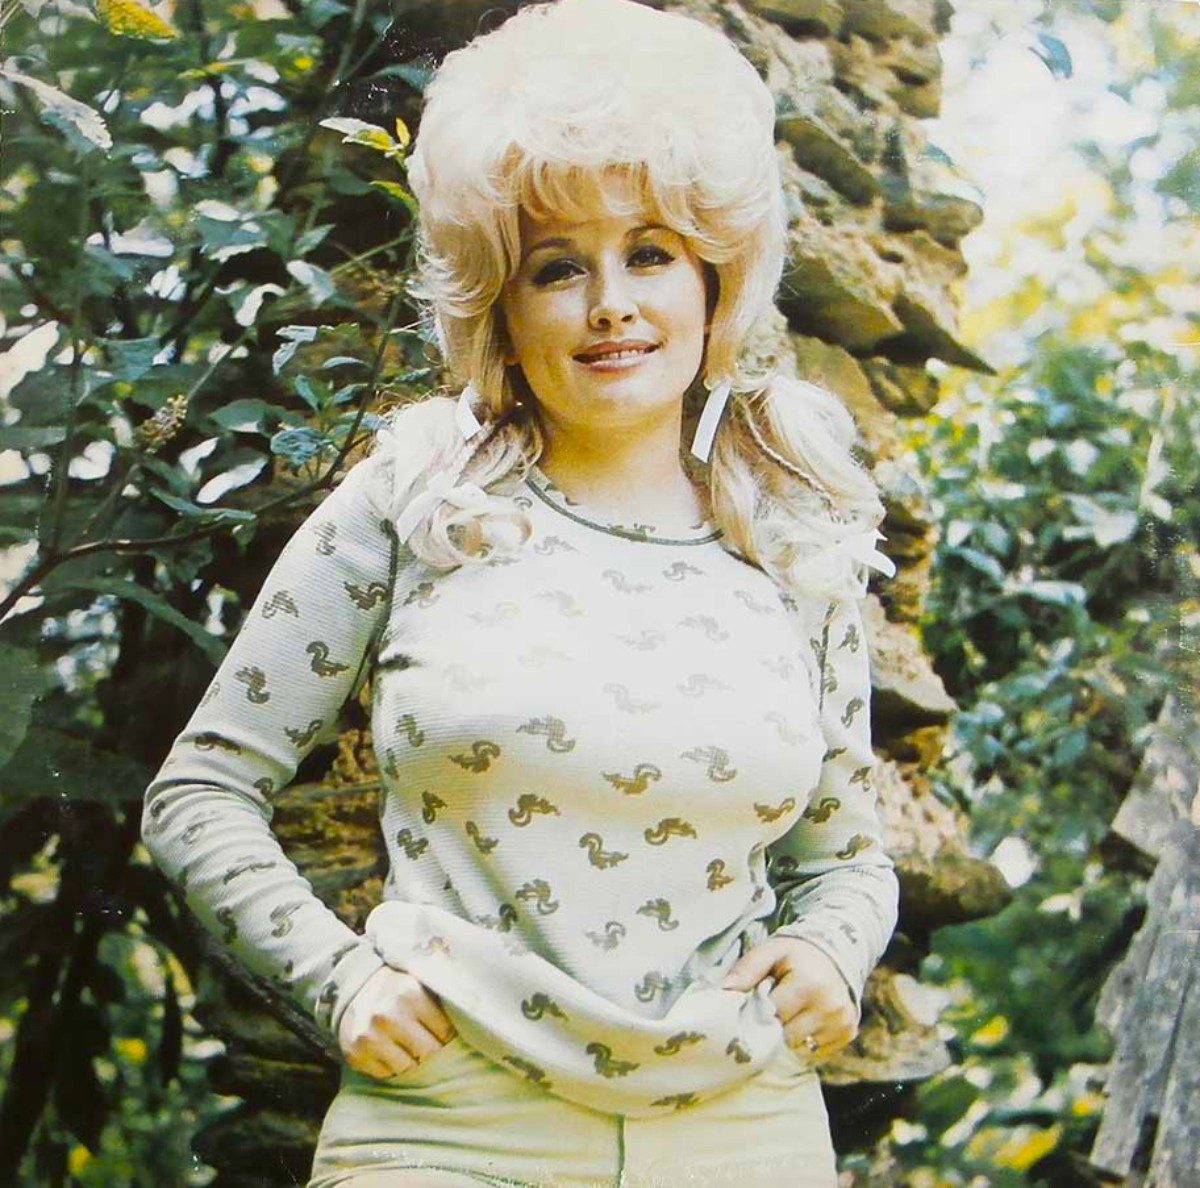 La joven Dolly Parton